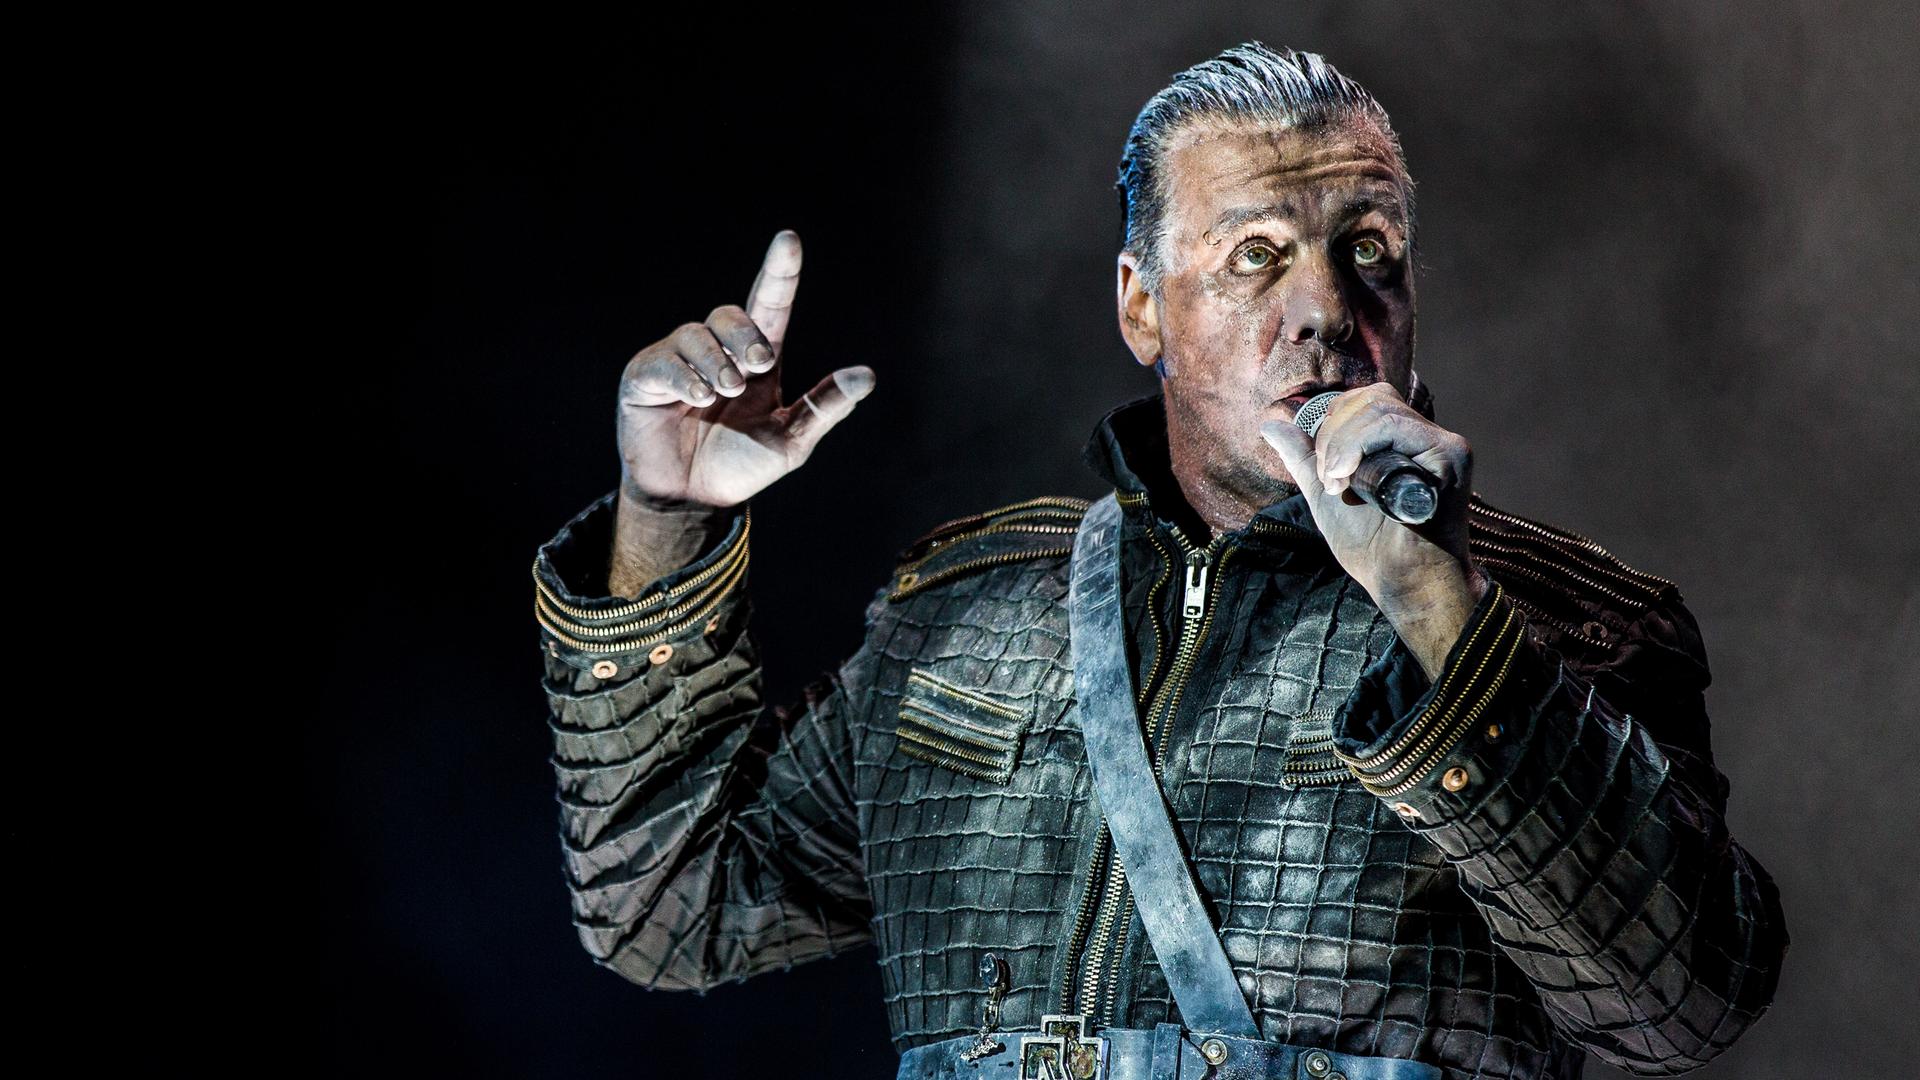 Das Foto zeigt den Sänger Till Lindemann. Er trägt eine Leder-Jacke und singt auf einer Bühne. 